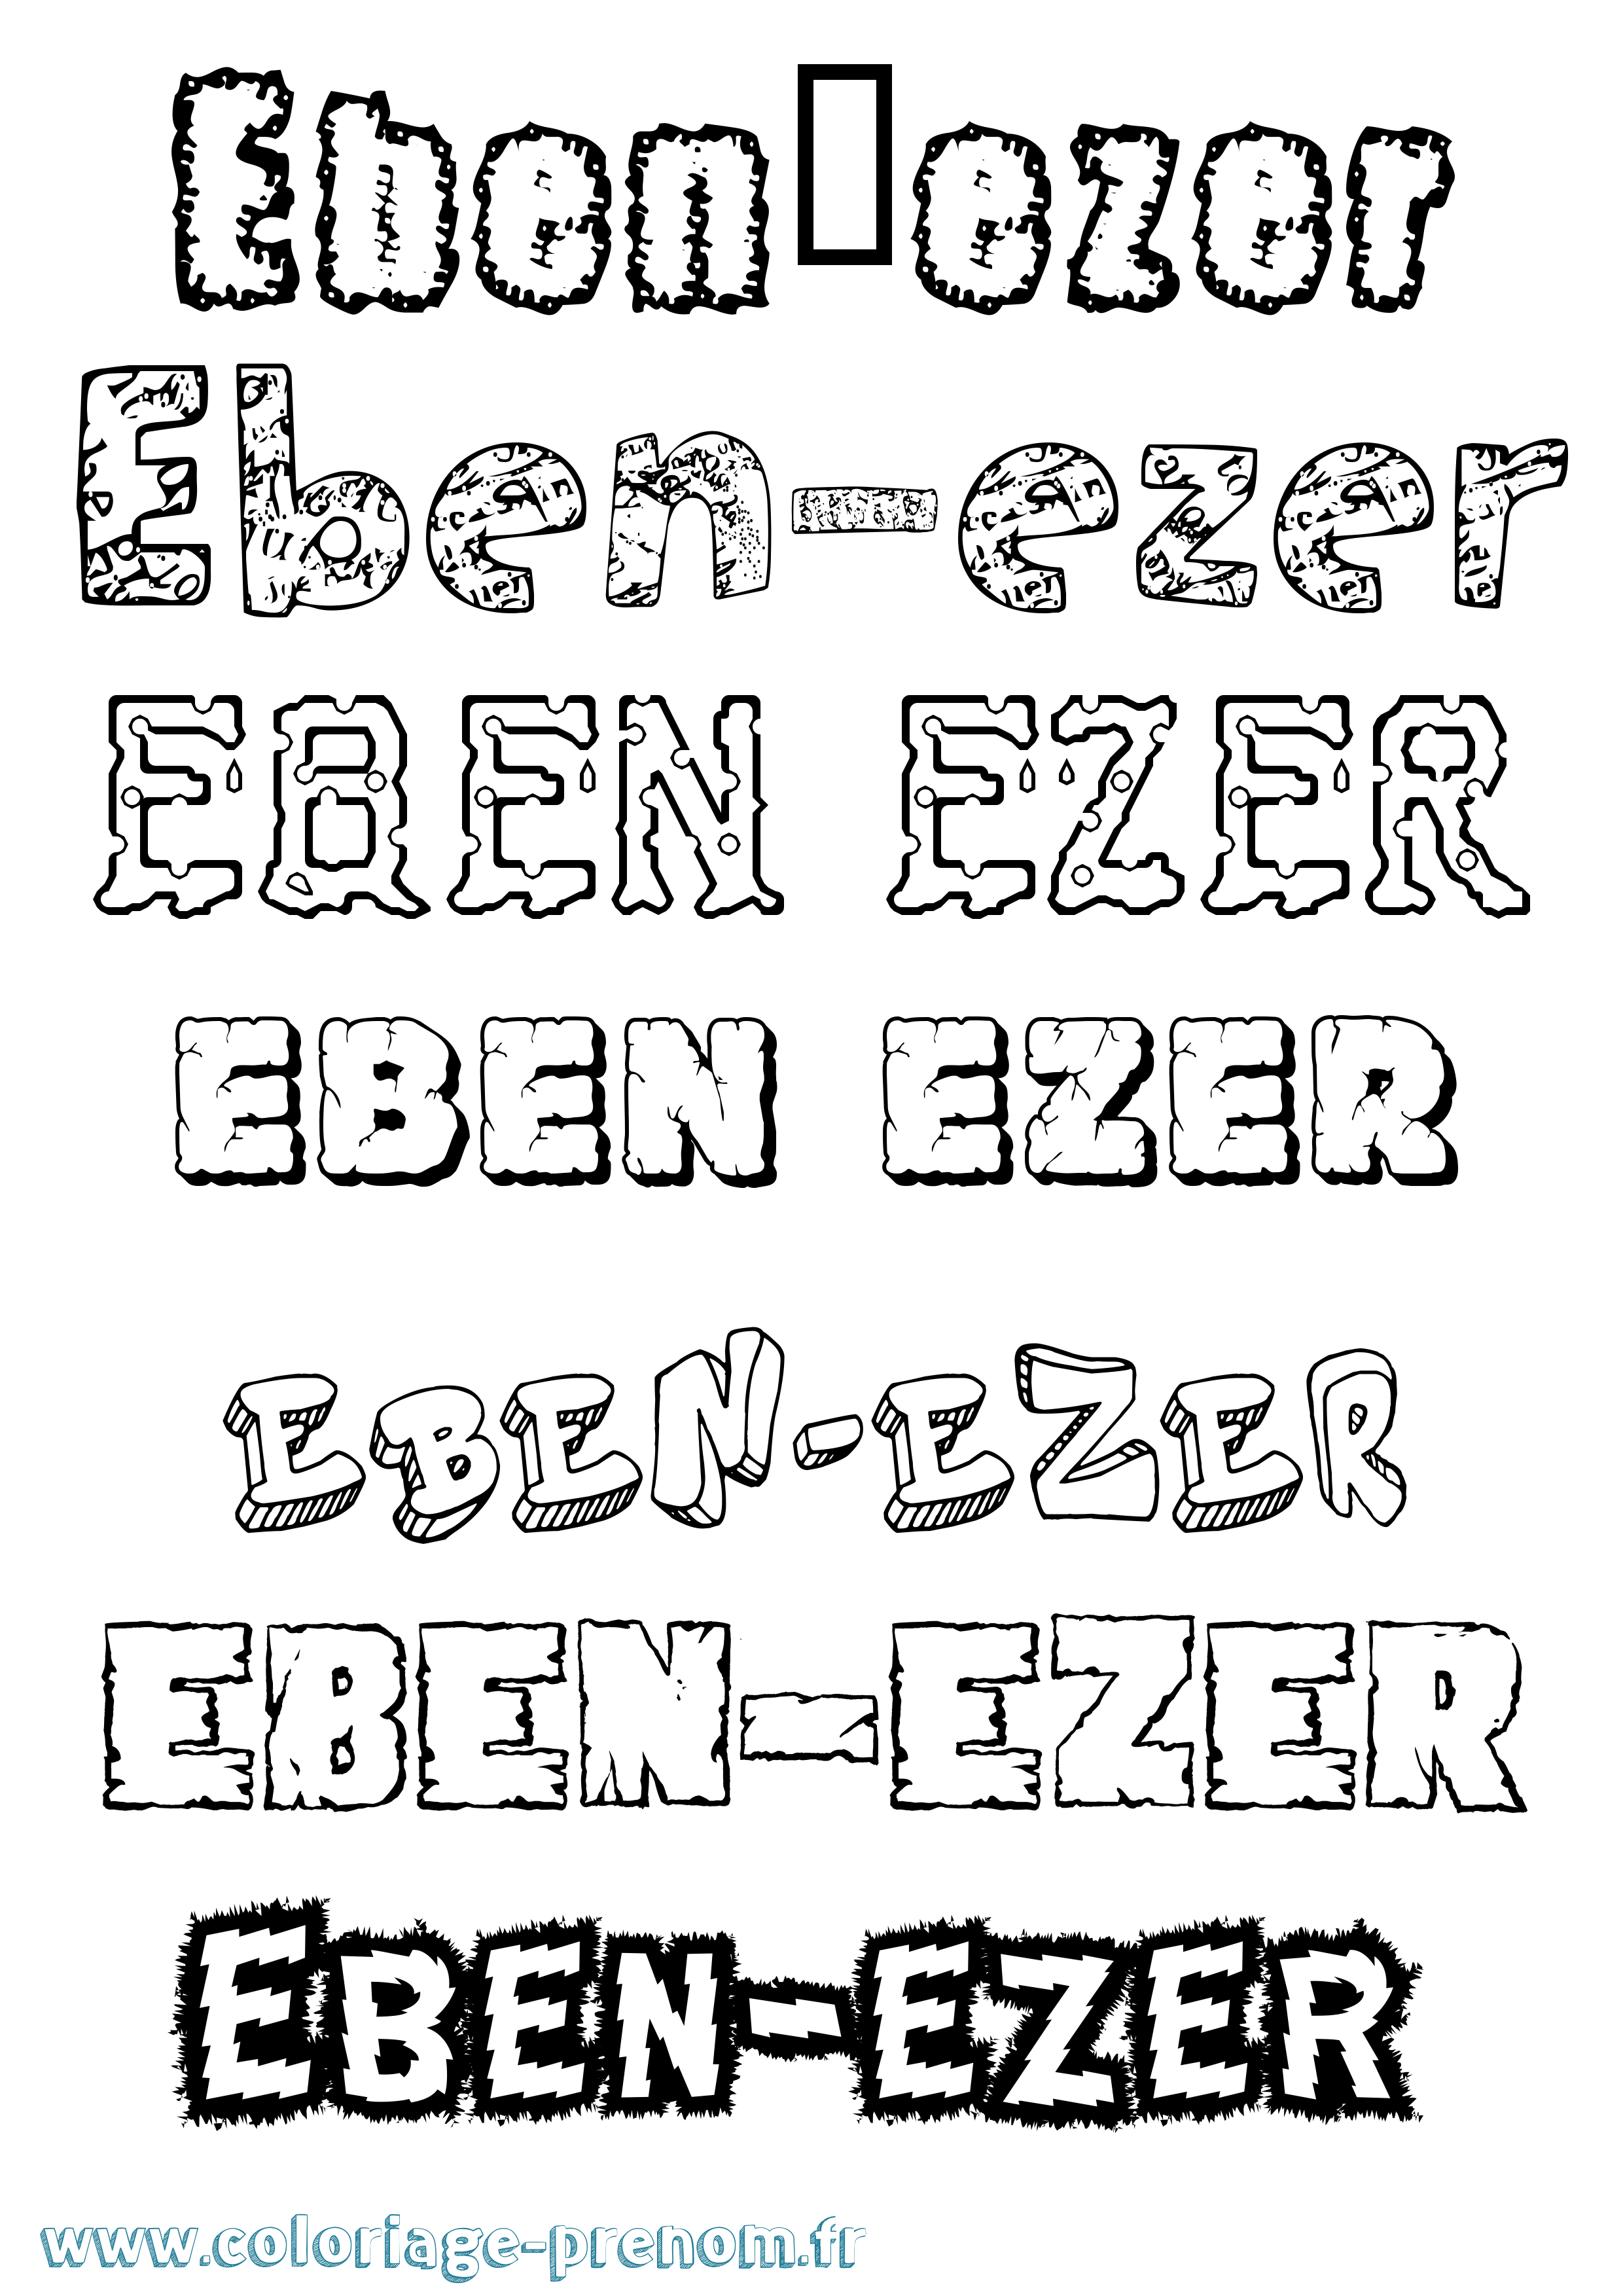 Coloriage prénom Eben-Ezer Destructuré